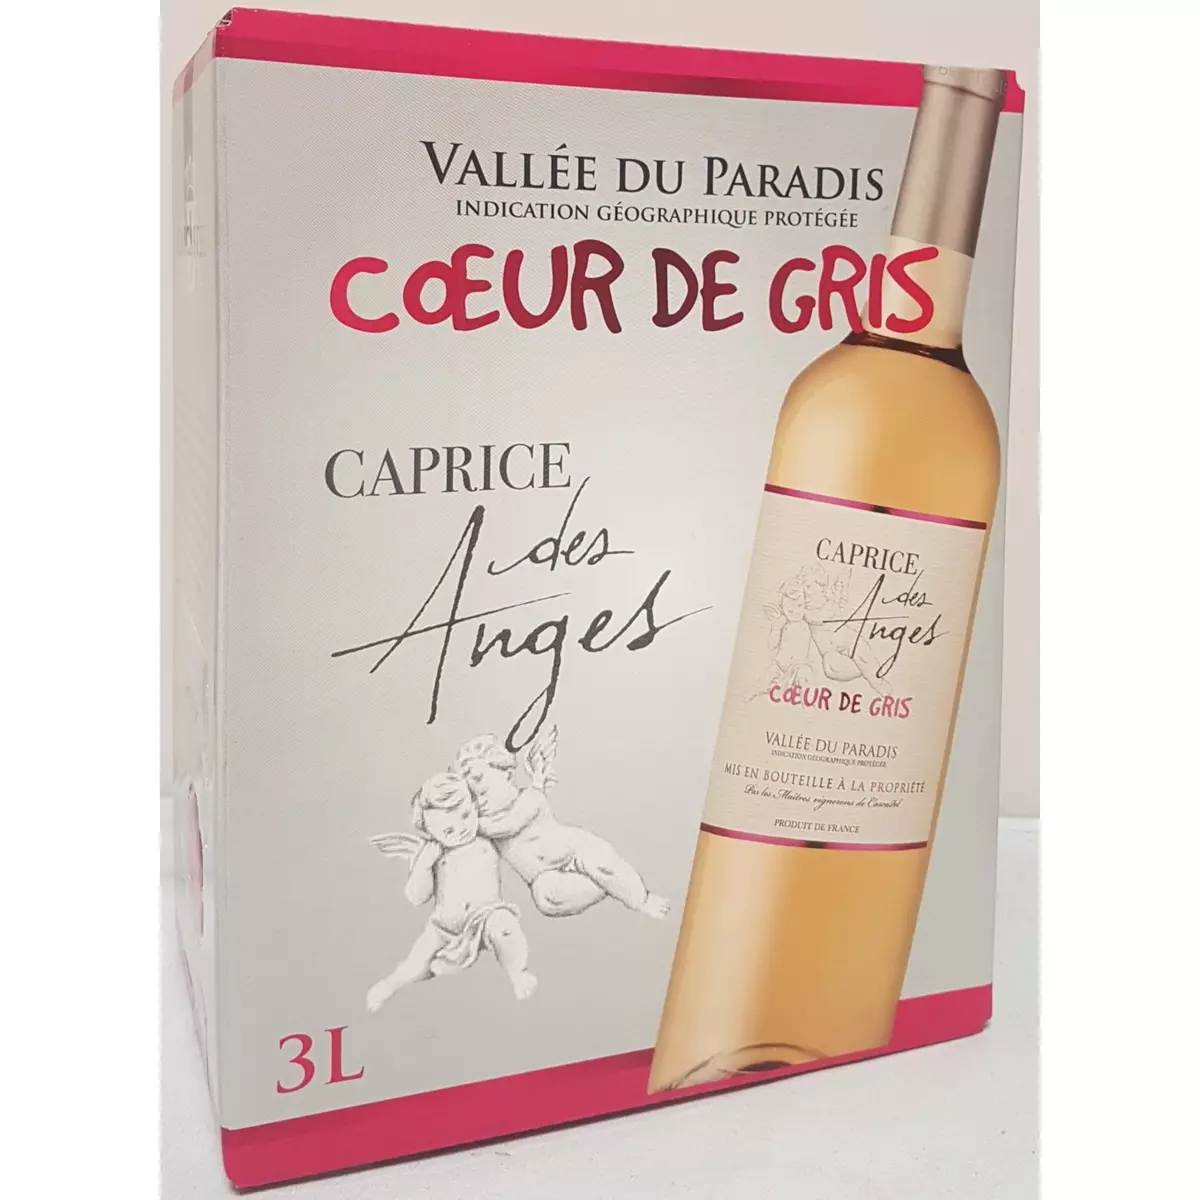 IGP Vallée du paradis Cœur de gris Caprice des Anges rosé bib 3l